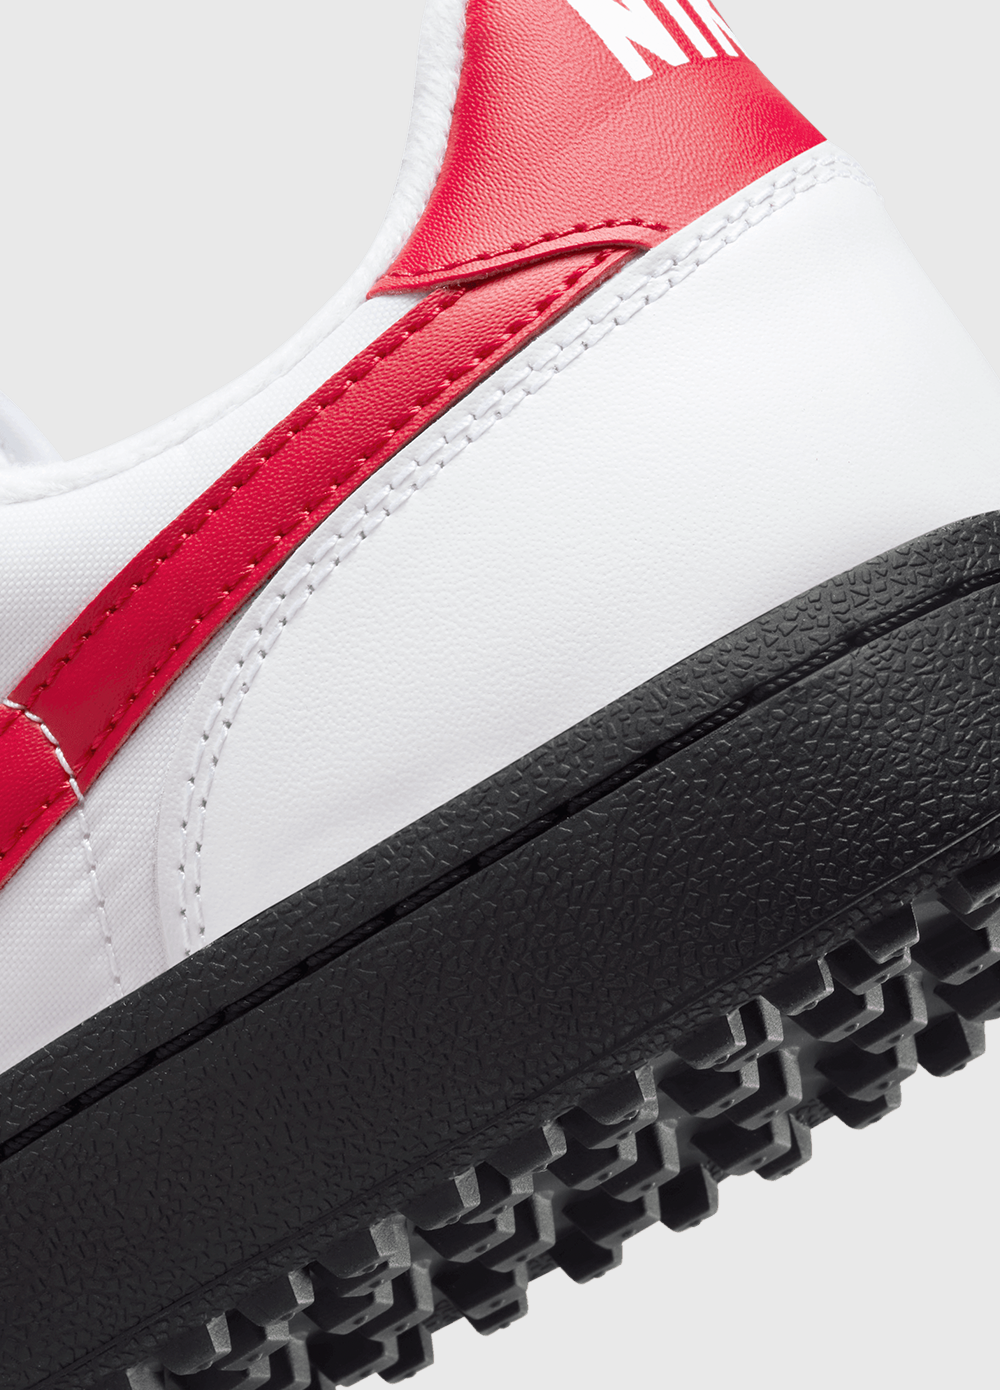 Nike Field General 82 SP 'White Varsity Red' Sneakers